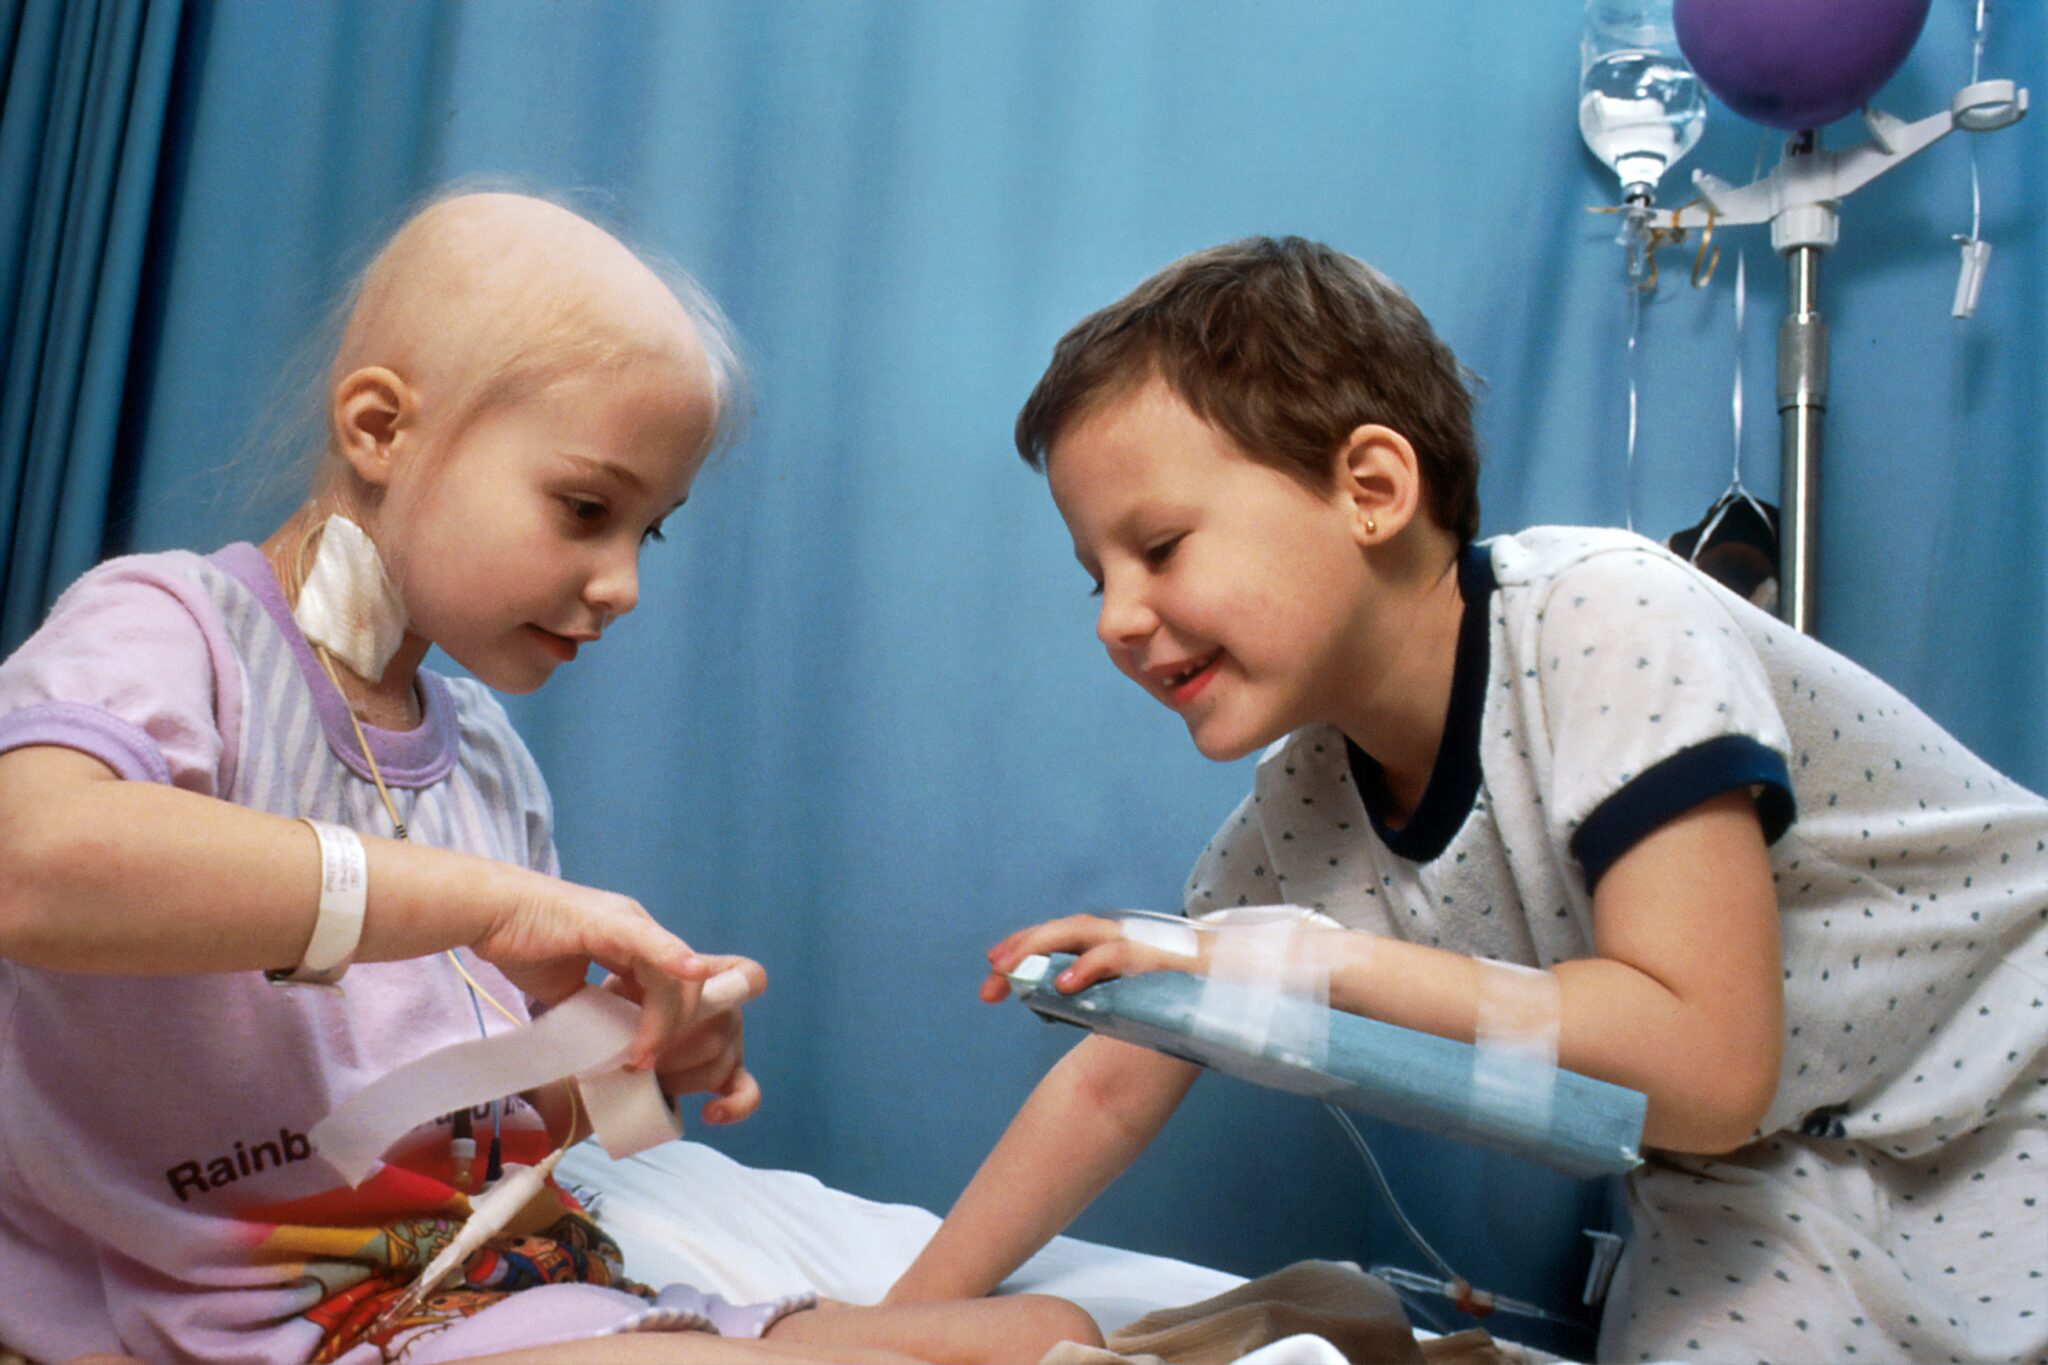 rak nowotwór dzieci szpital